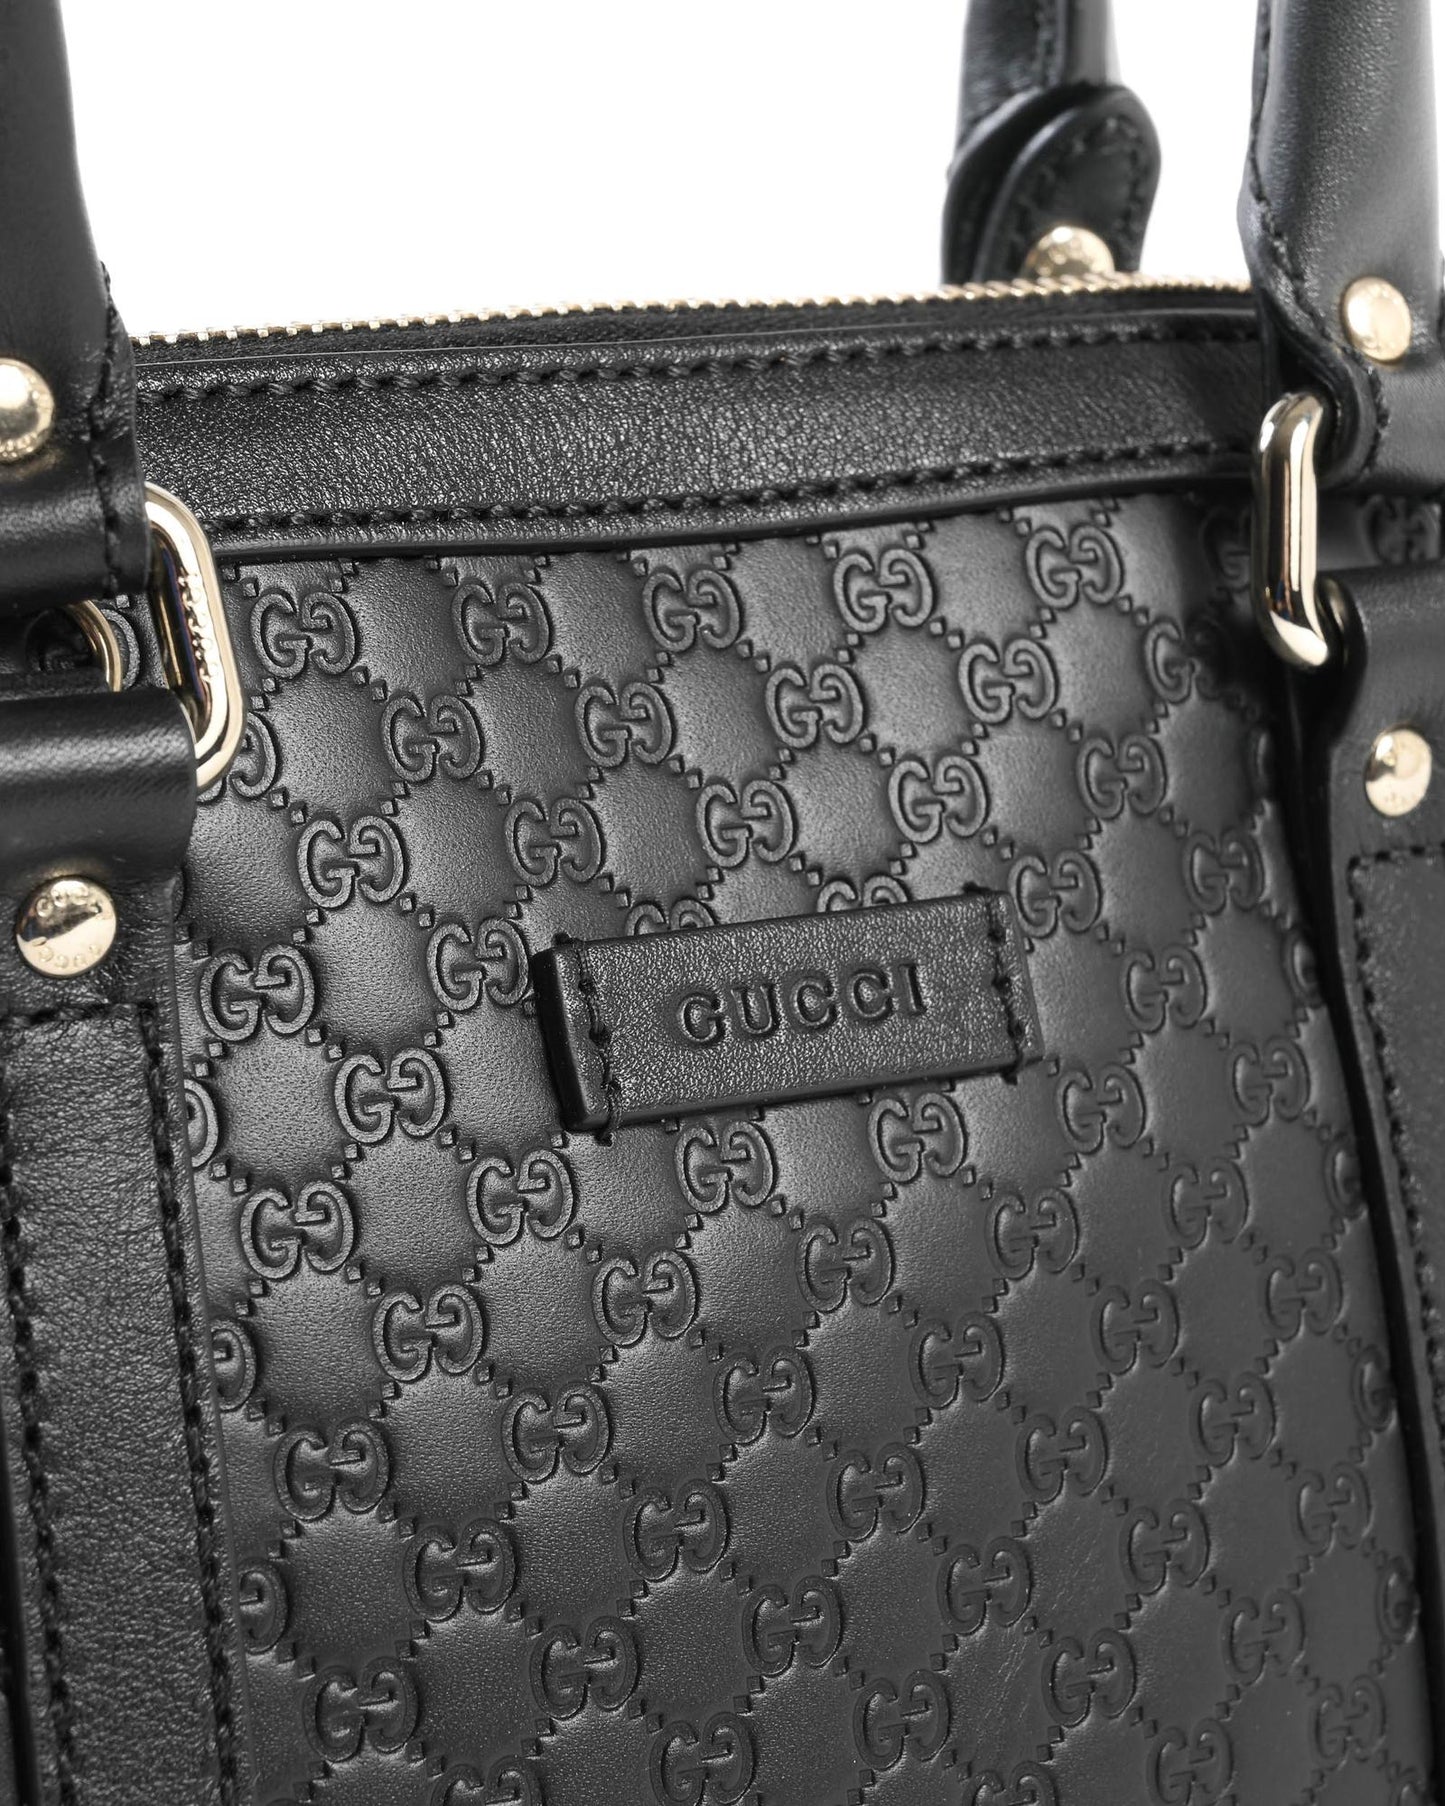 Gucci Women's Leather Mini Dome Bag in Black